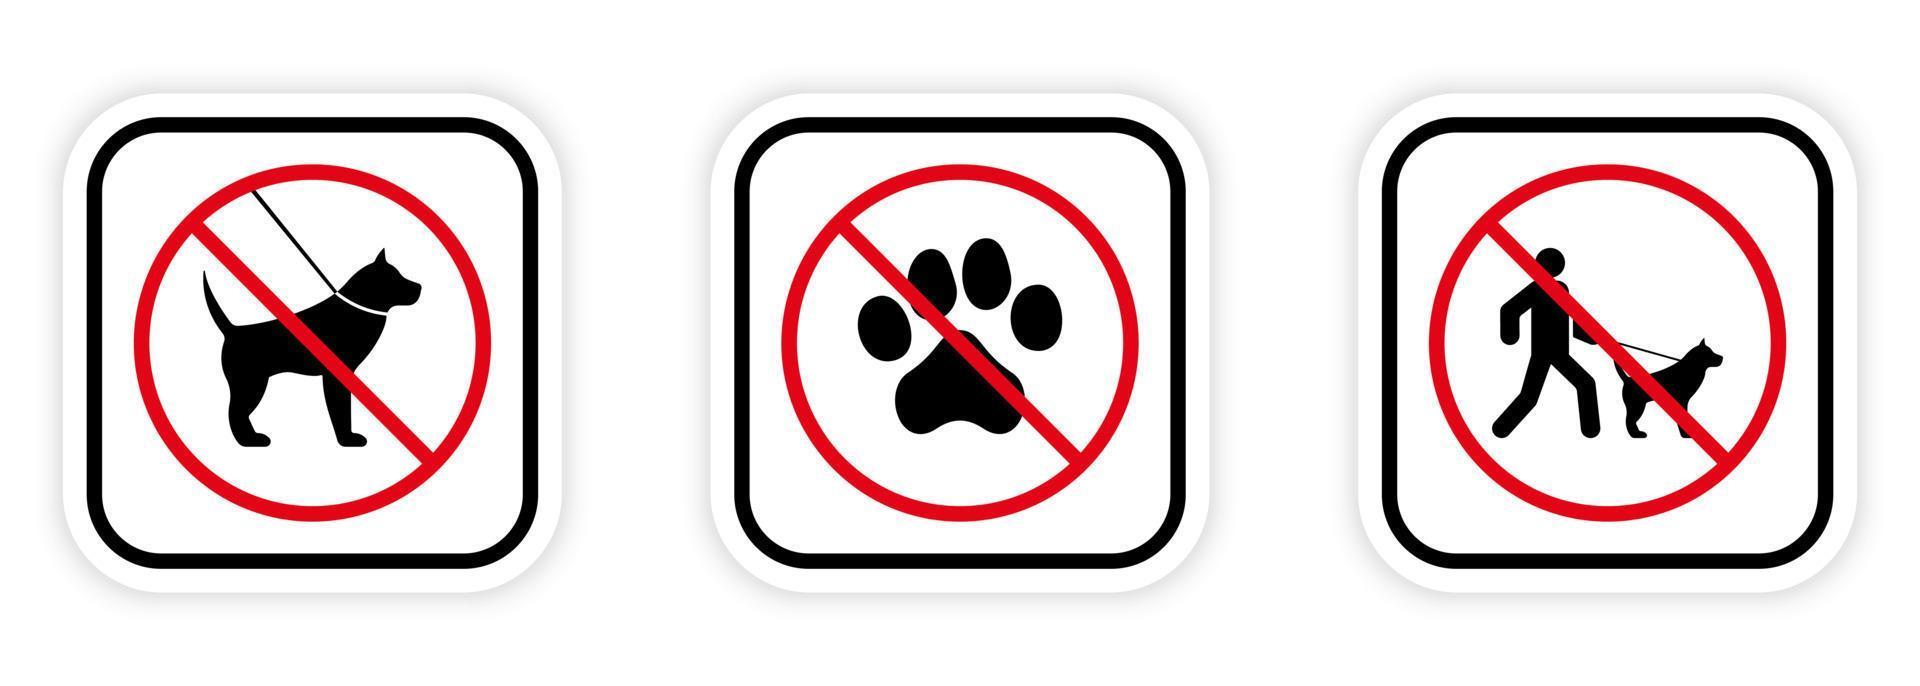 piktogram för förbjuden hundpromenad. man med hund i koppel röd stoppcirkelsymbol. tass fotavtryck förbud svart siluett ikon. inga tillåtna husdjur skylt. förbjuden promenadparkzon. isolerade vektor illustration.